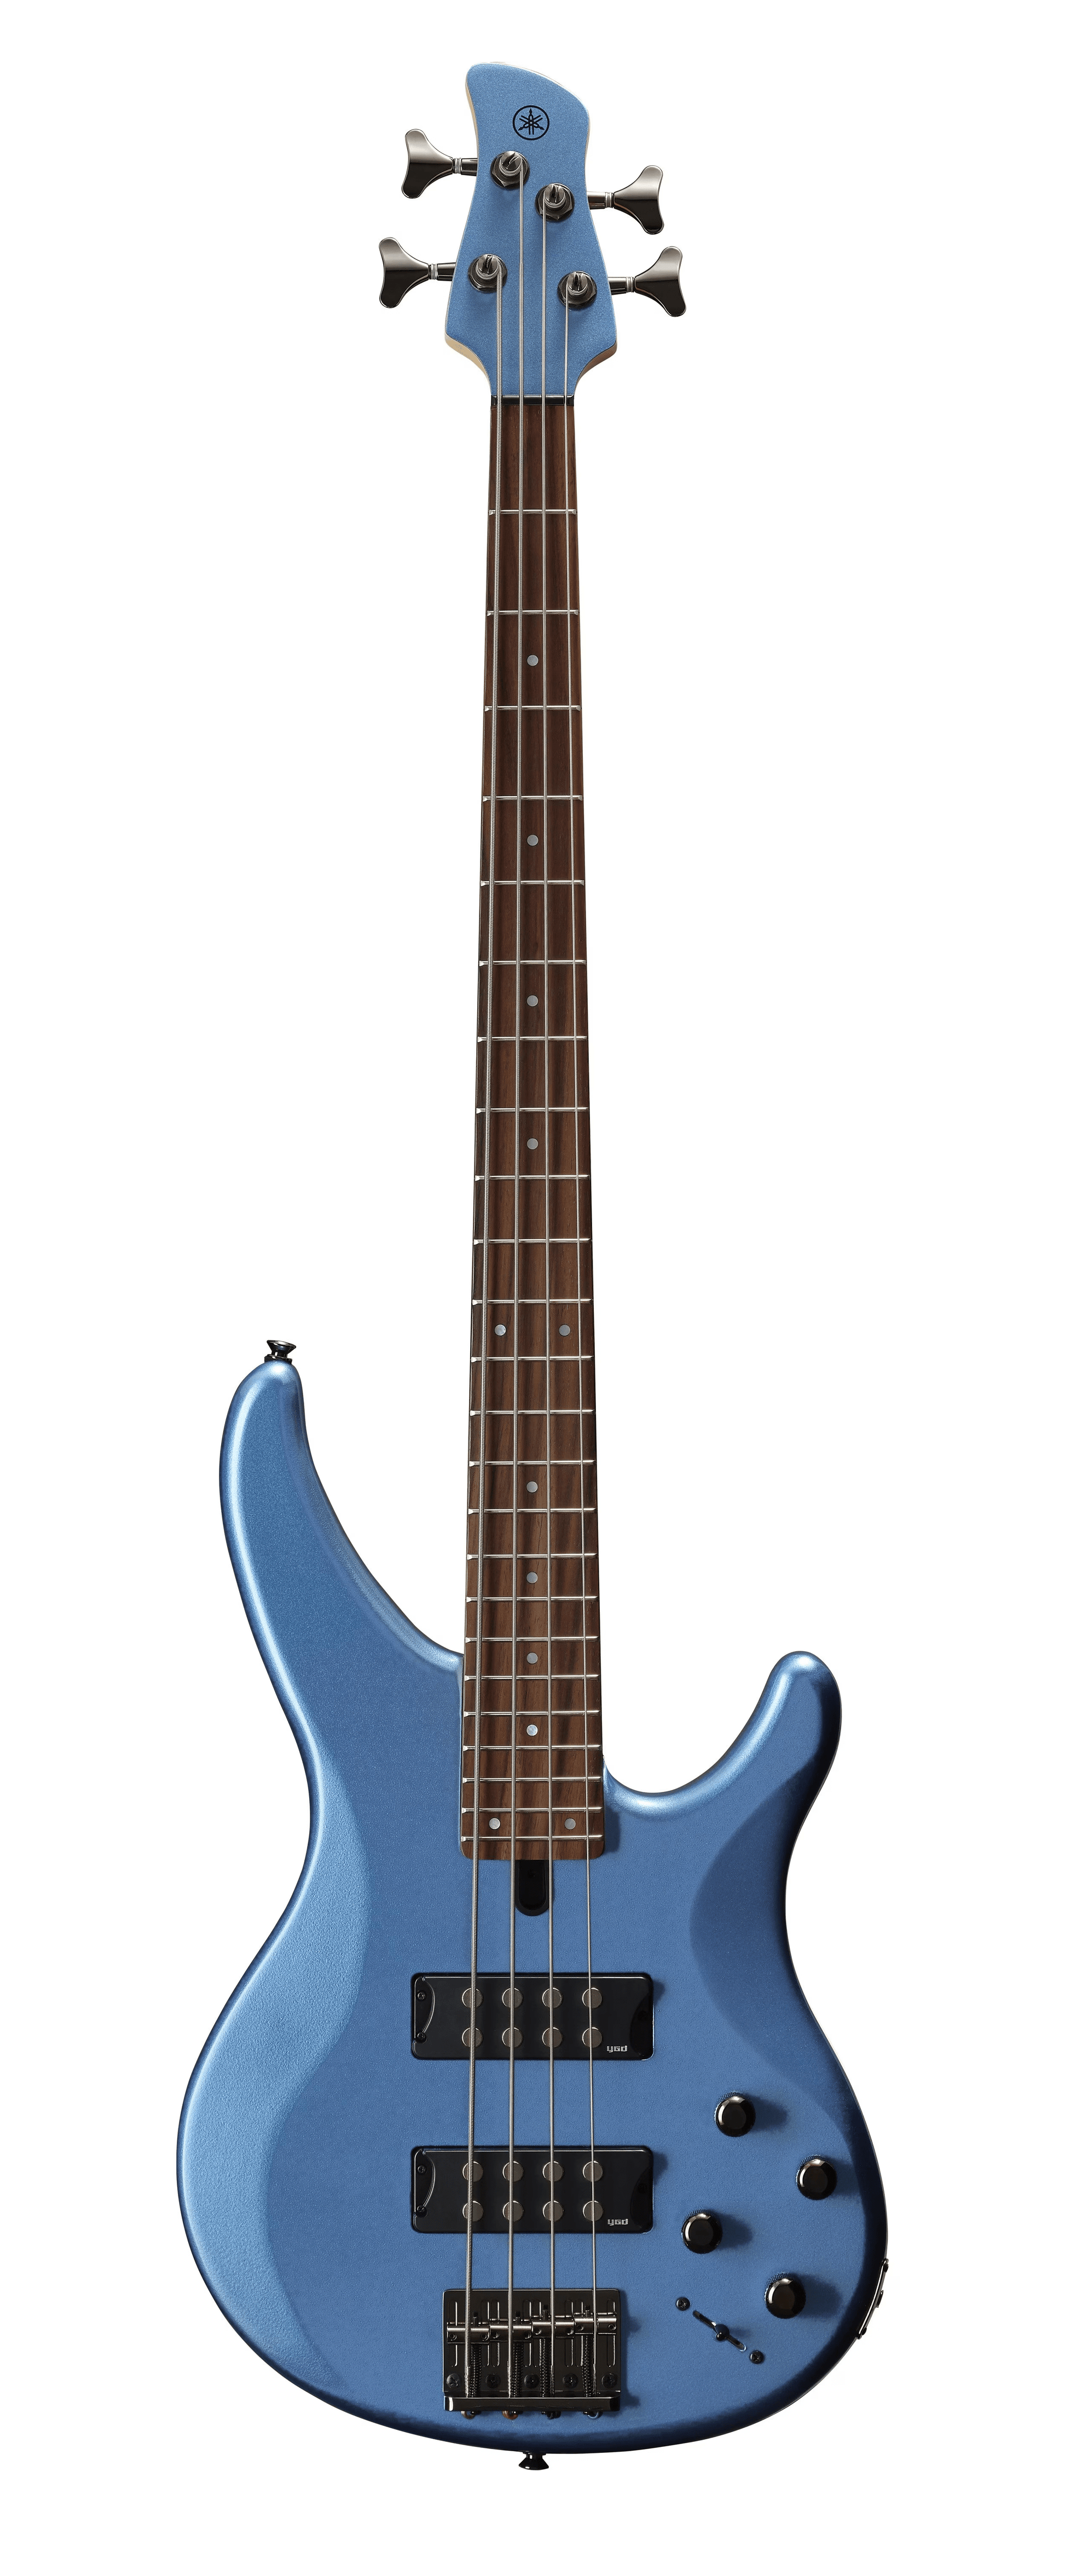 Yamaha TRBX304 Bass Guitar - Factory Blue - Joondalup Music Centre